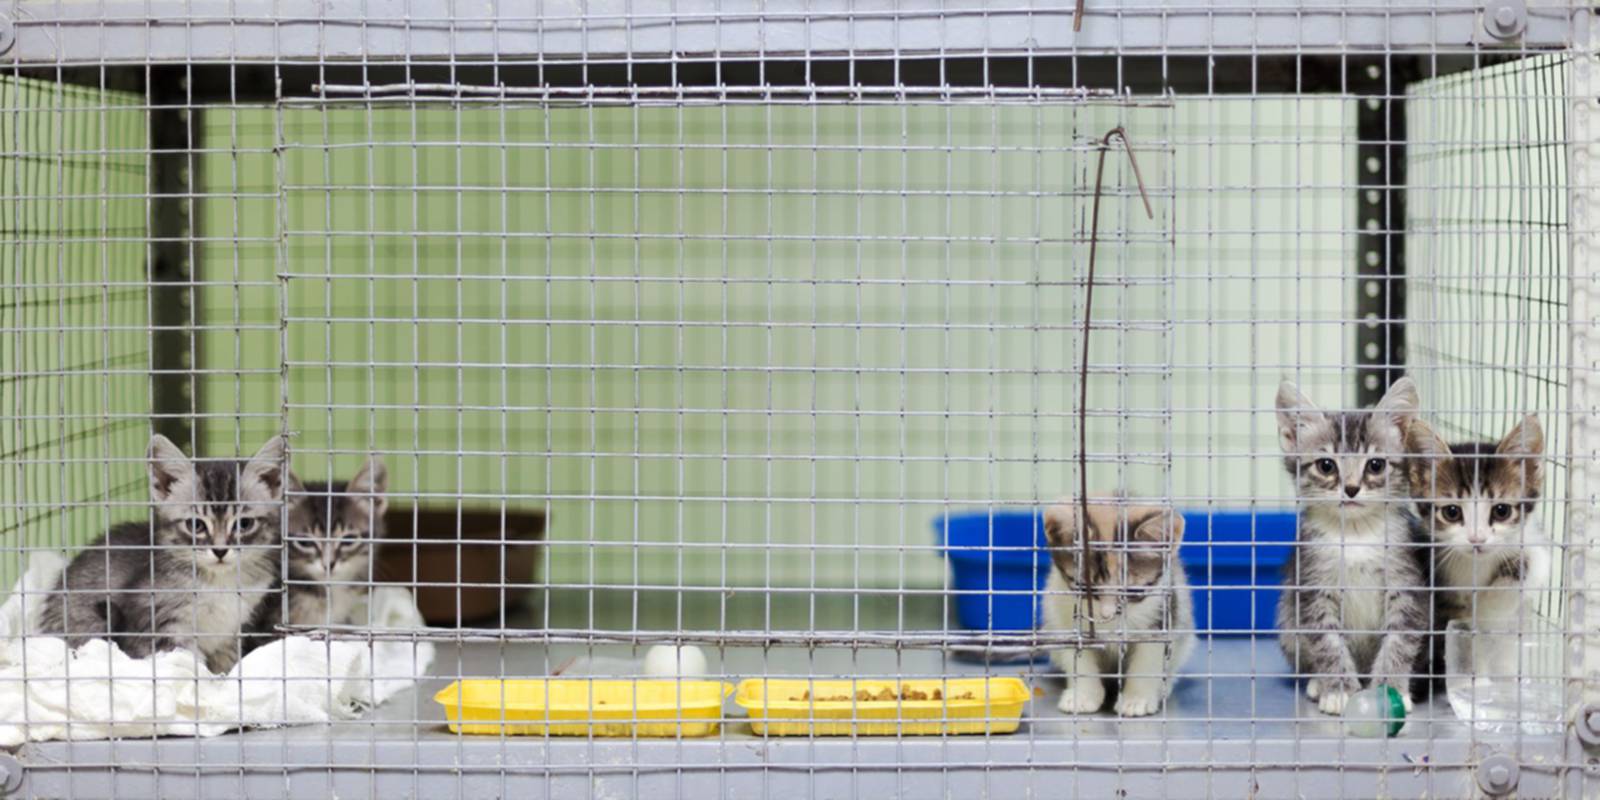 Ninhada de gatinhos na jaula de um albergue